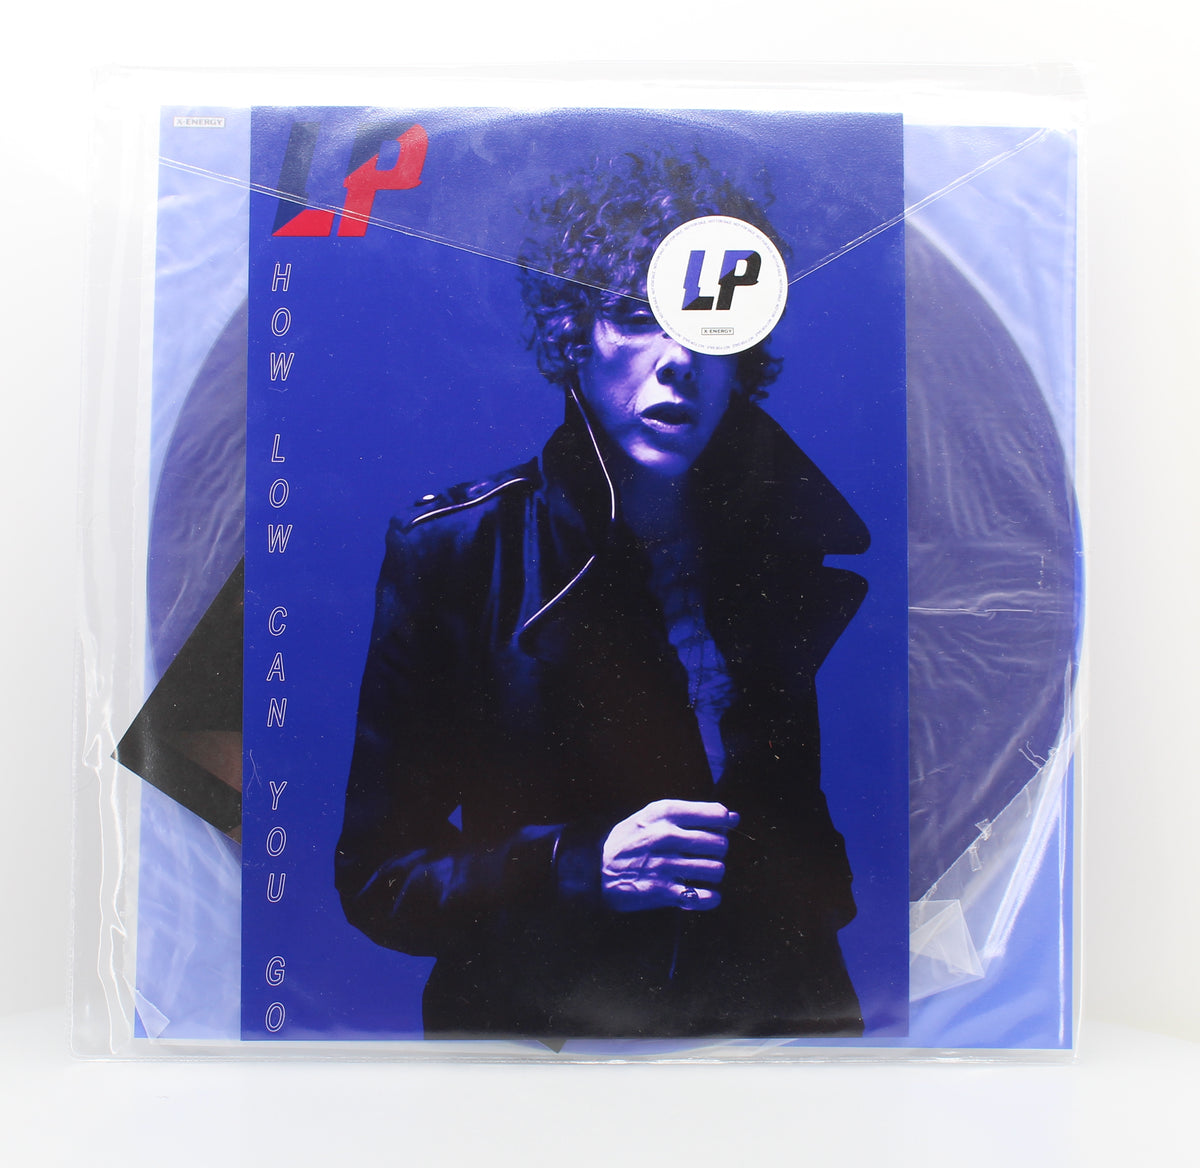 Laura Pergolizzi L.P. -  How Low Can You Go (Addal Remix), Vinyl Maxi-Single 45rpm, 2021